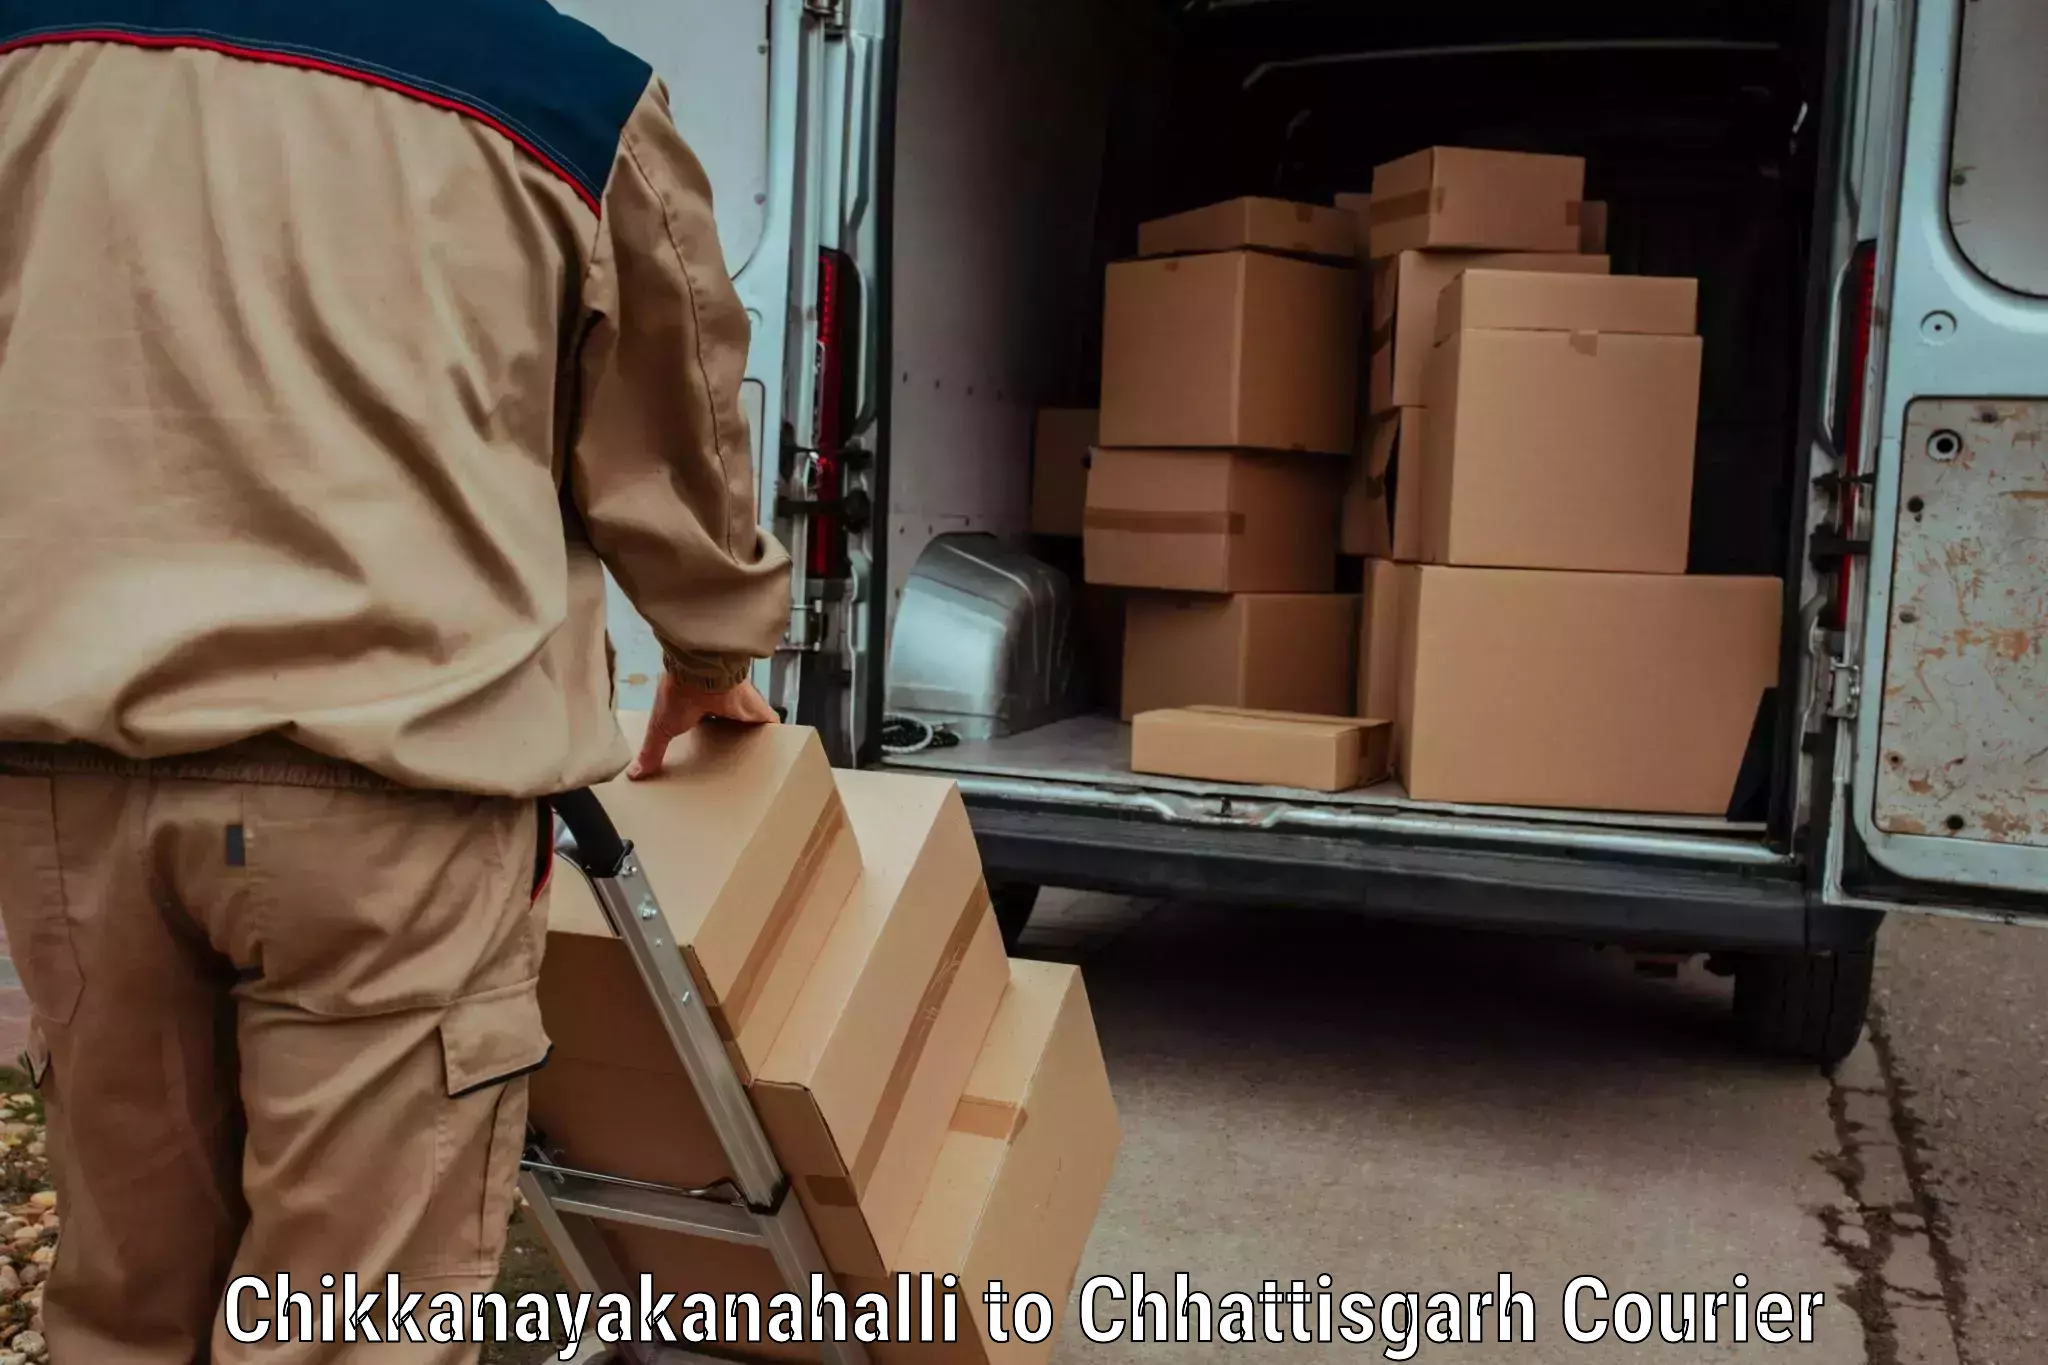 Efficient freight service Chikkanayakanahalli to Kondagaon